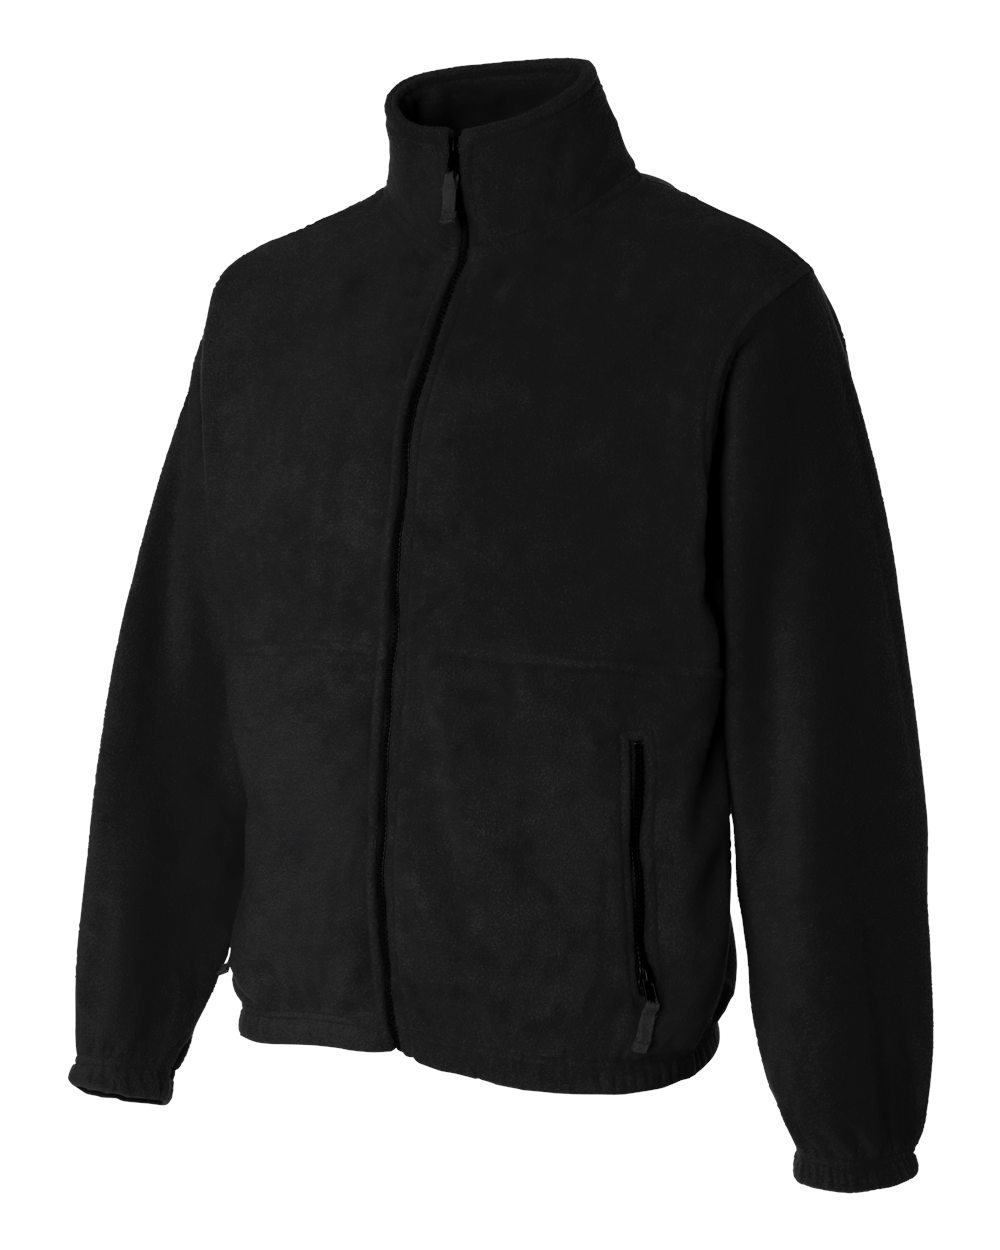 Sierra Pacific 3061 Full-Zip Fleece Jacket